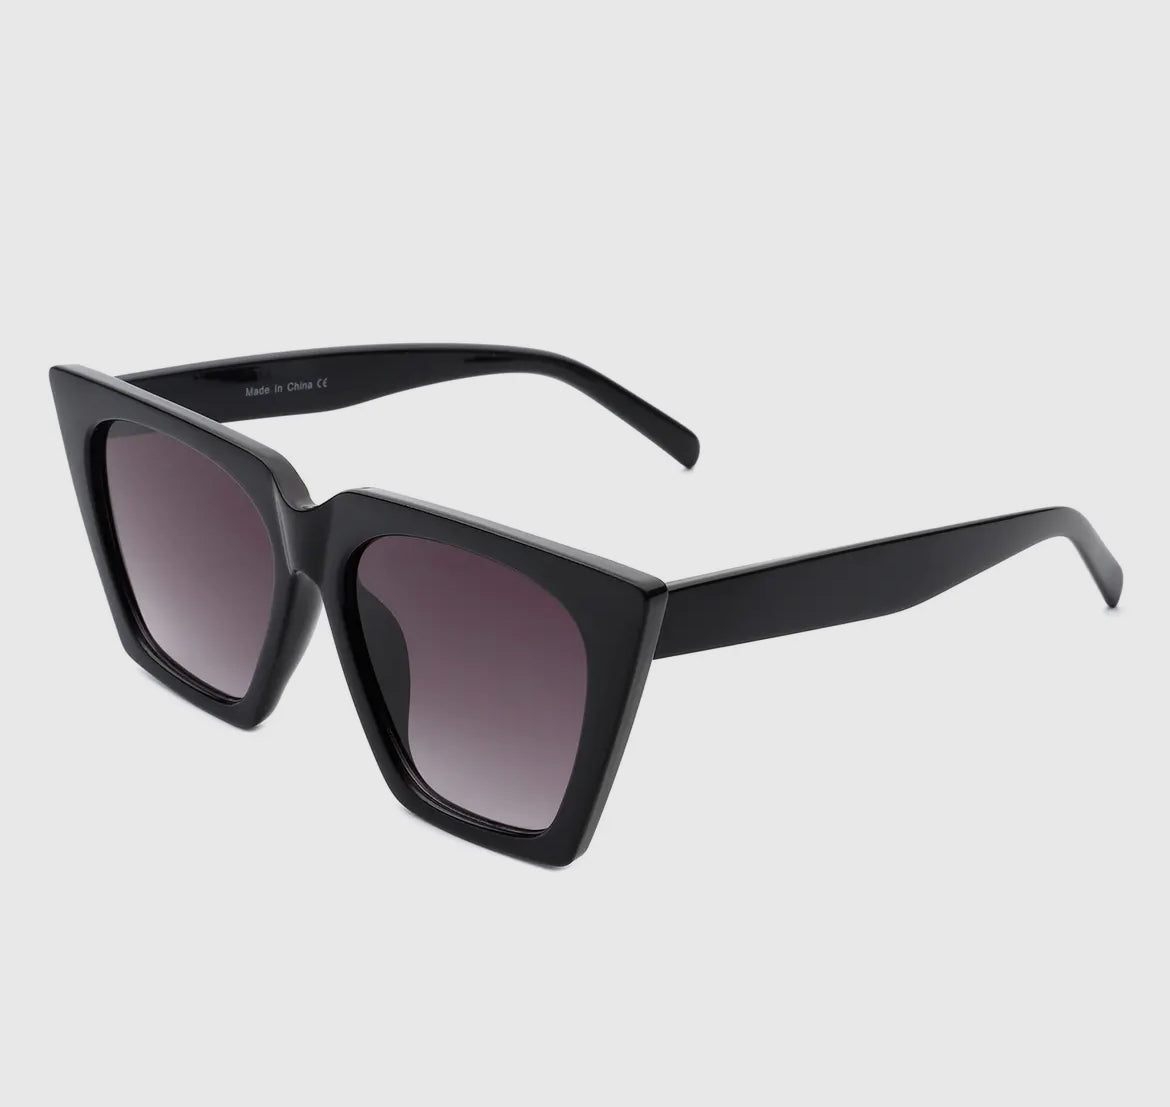 Retro Square Cat Eye Sunglasses - Premium variation from Tooksie - Just $18.99! Shop now at Tooksie